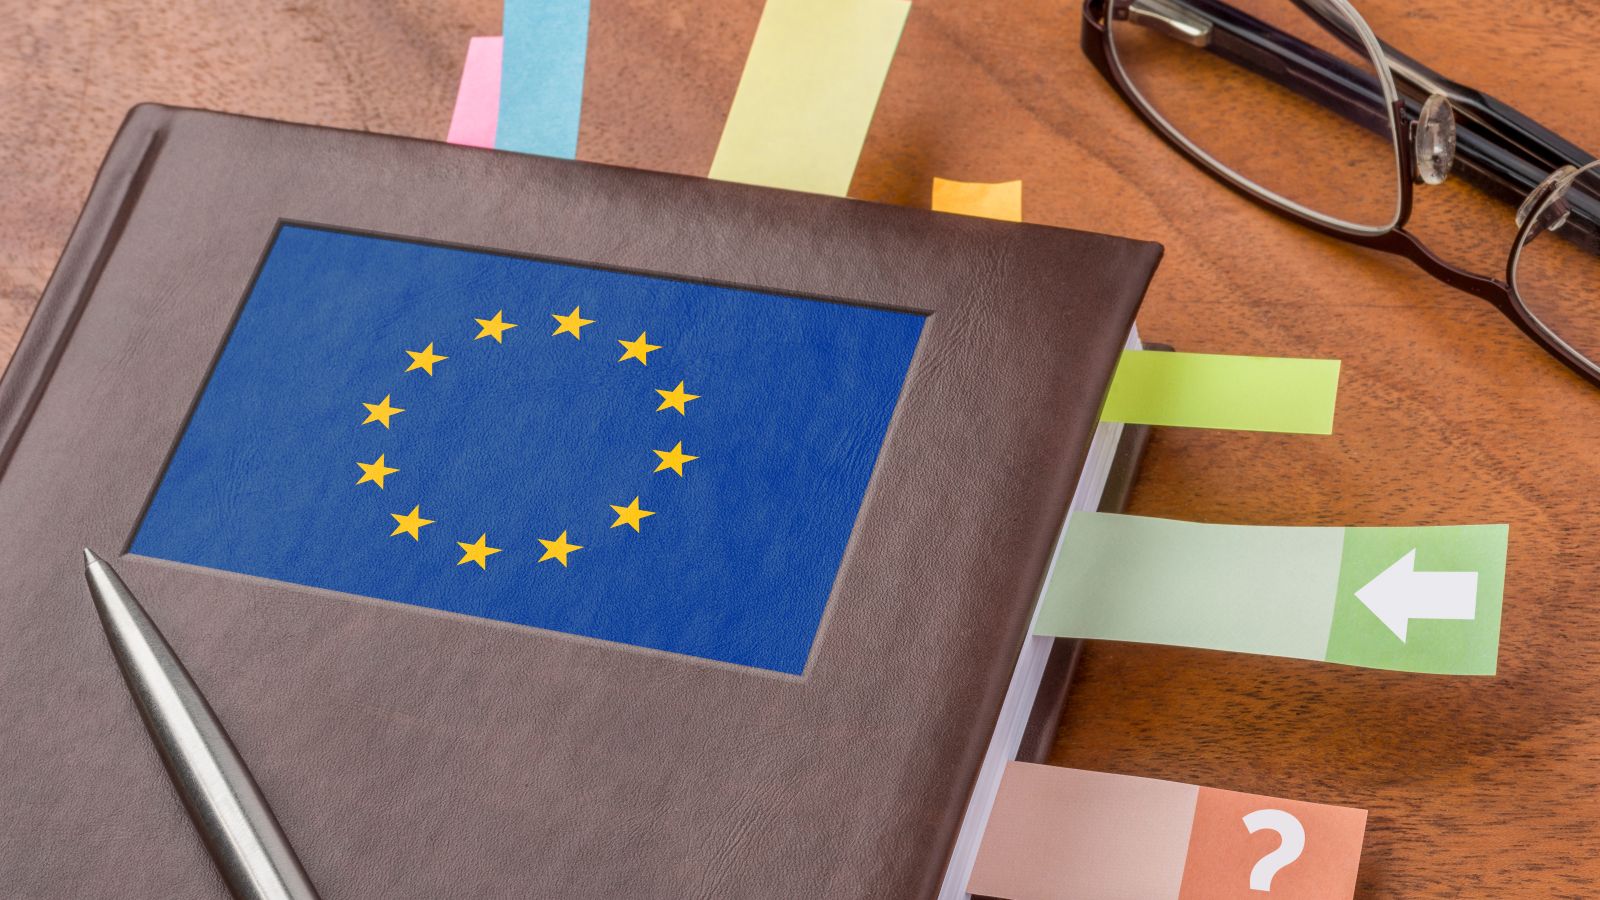 Ein Notizbuch mit einer EU-Flagge als Logo und eine schwarze Lesebrille liegen auf einem Tisch. Zwischen den Seiten im Notizbuch sind bunte Post-its eingeklebt. Auf dem Notizbuch liegt ein Stift.